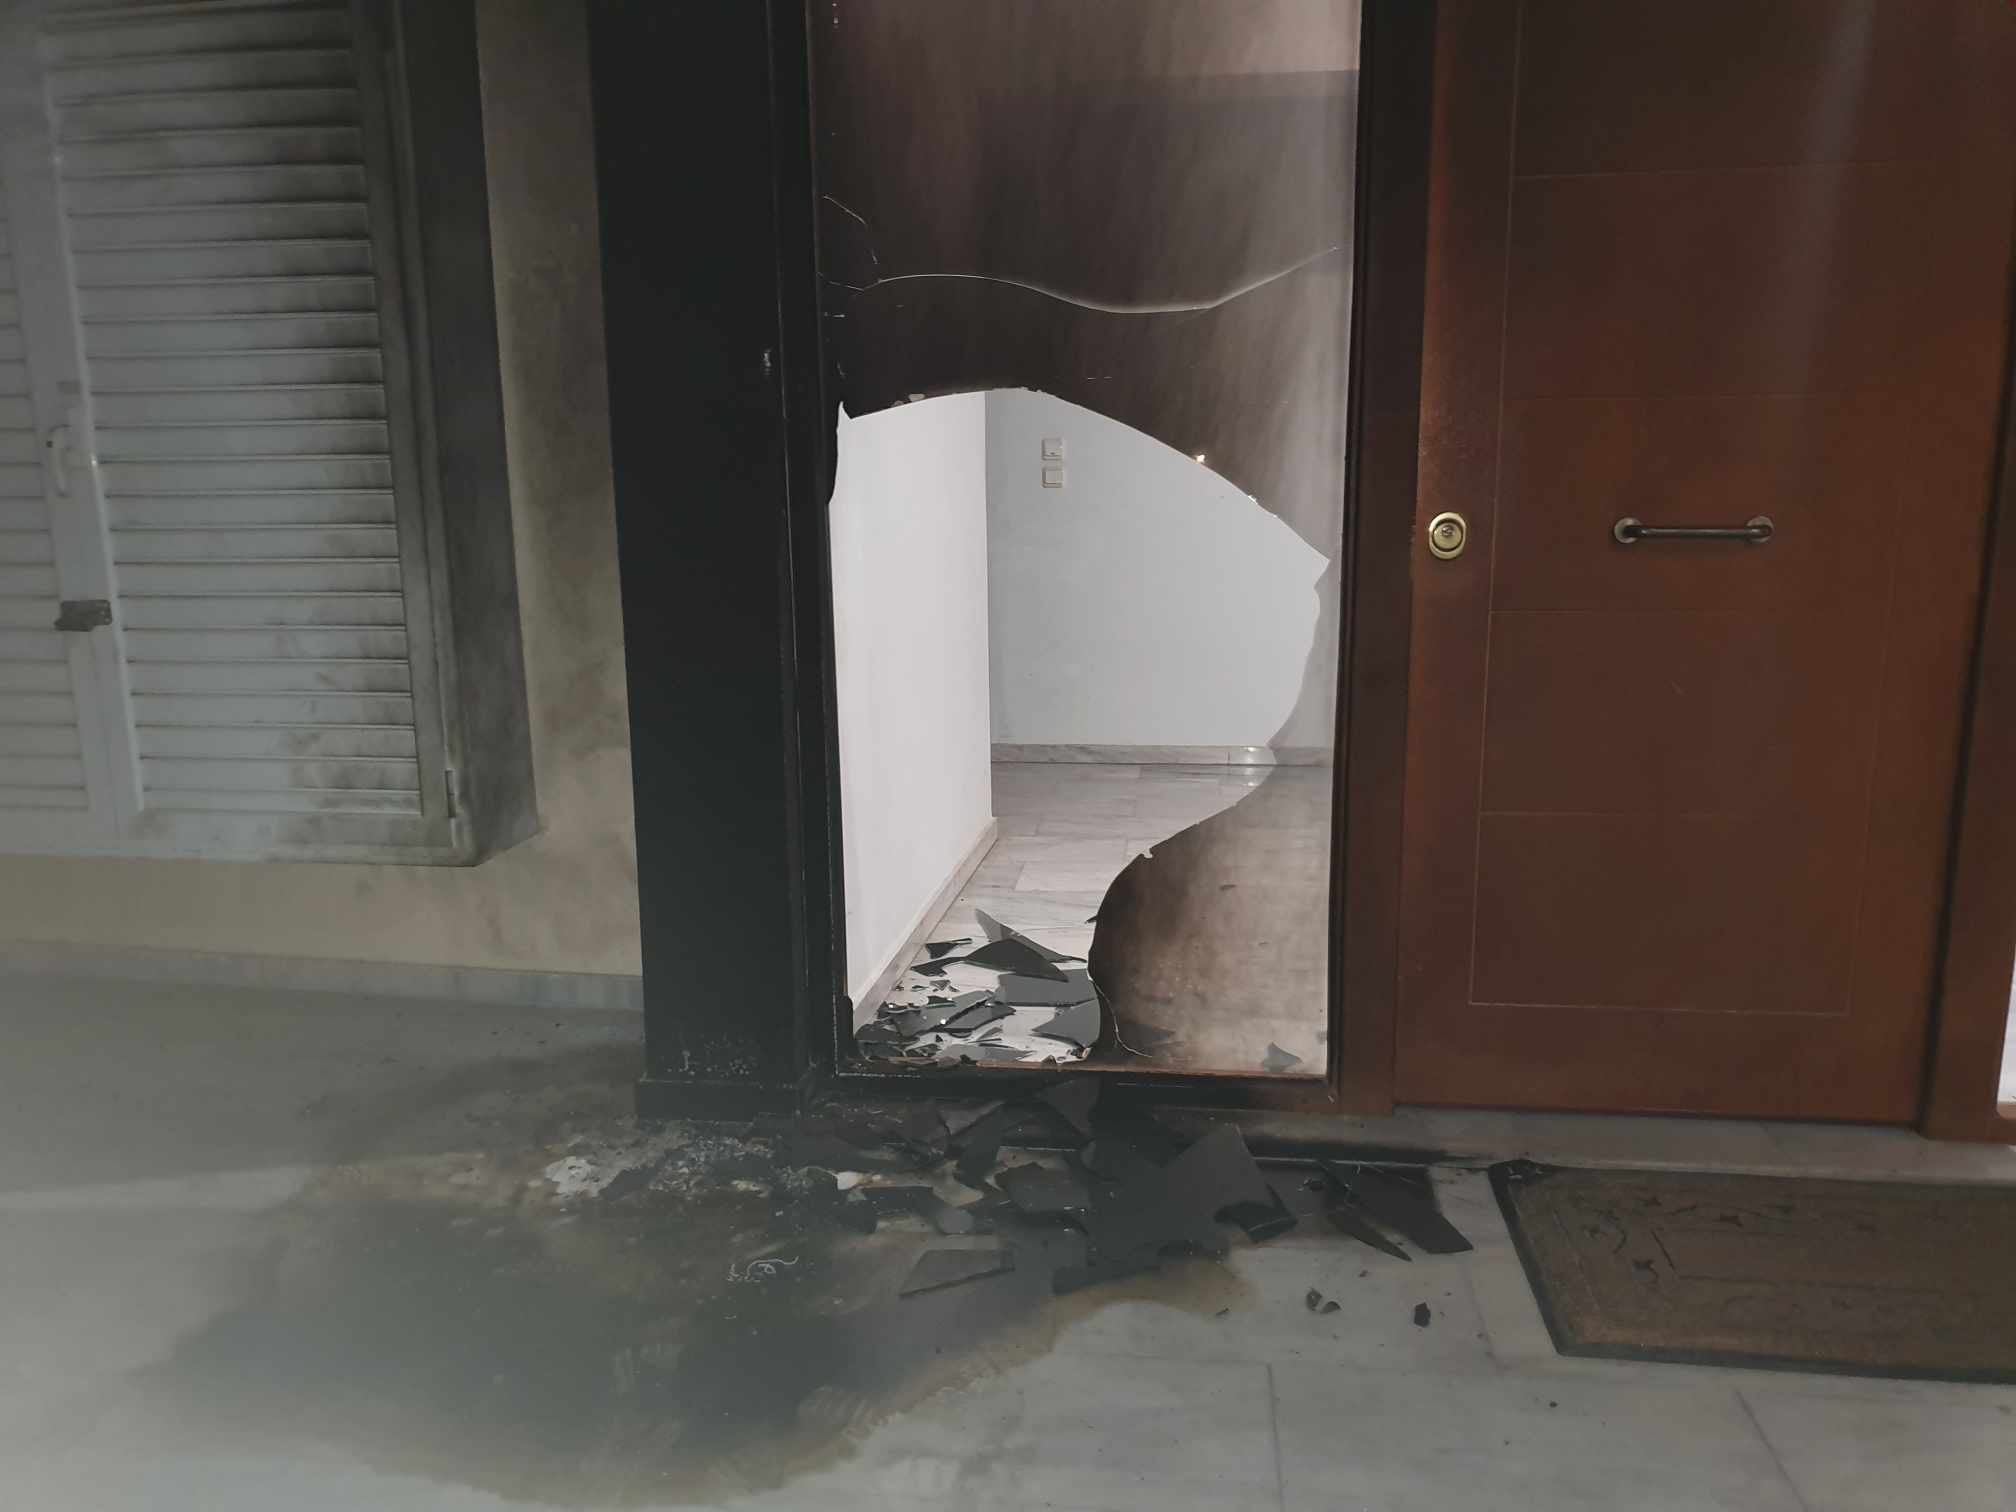 Χολαργός: Έκρηξη αυτοσχέδιου μηχανισμού με γκαζάκια σε είσοδο πολυκατοικίας – Μικρές υλικές ζημιές